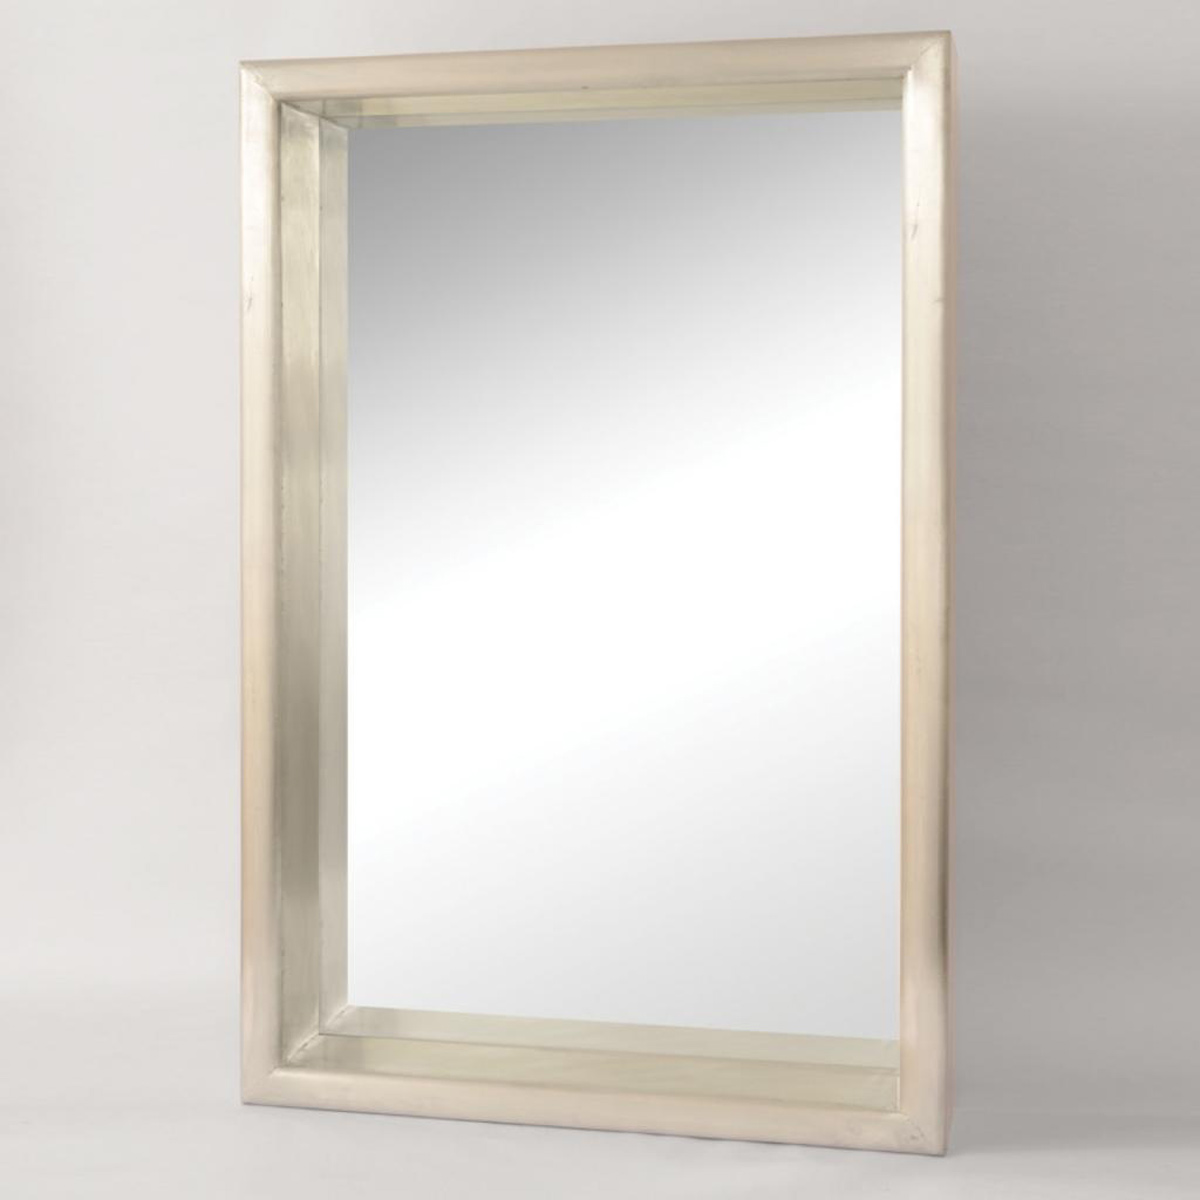 Ren-Wil Pheobe Mirror - Natural